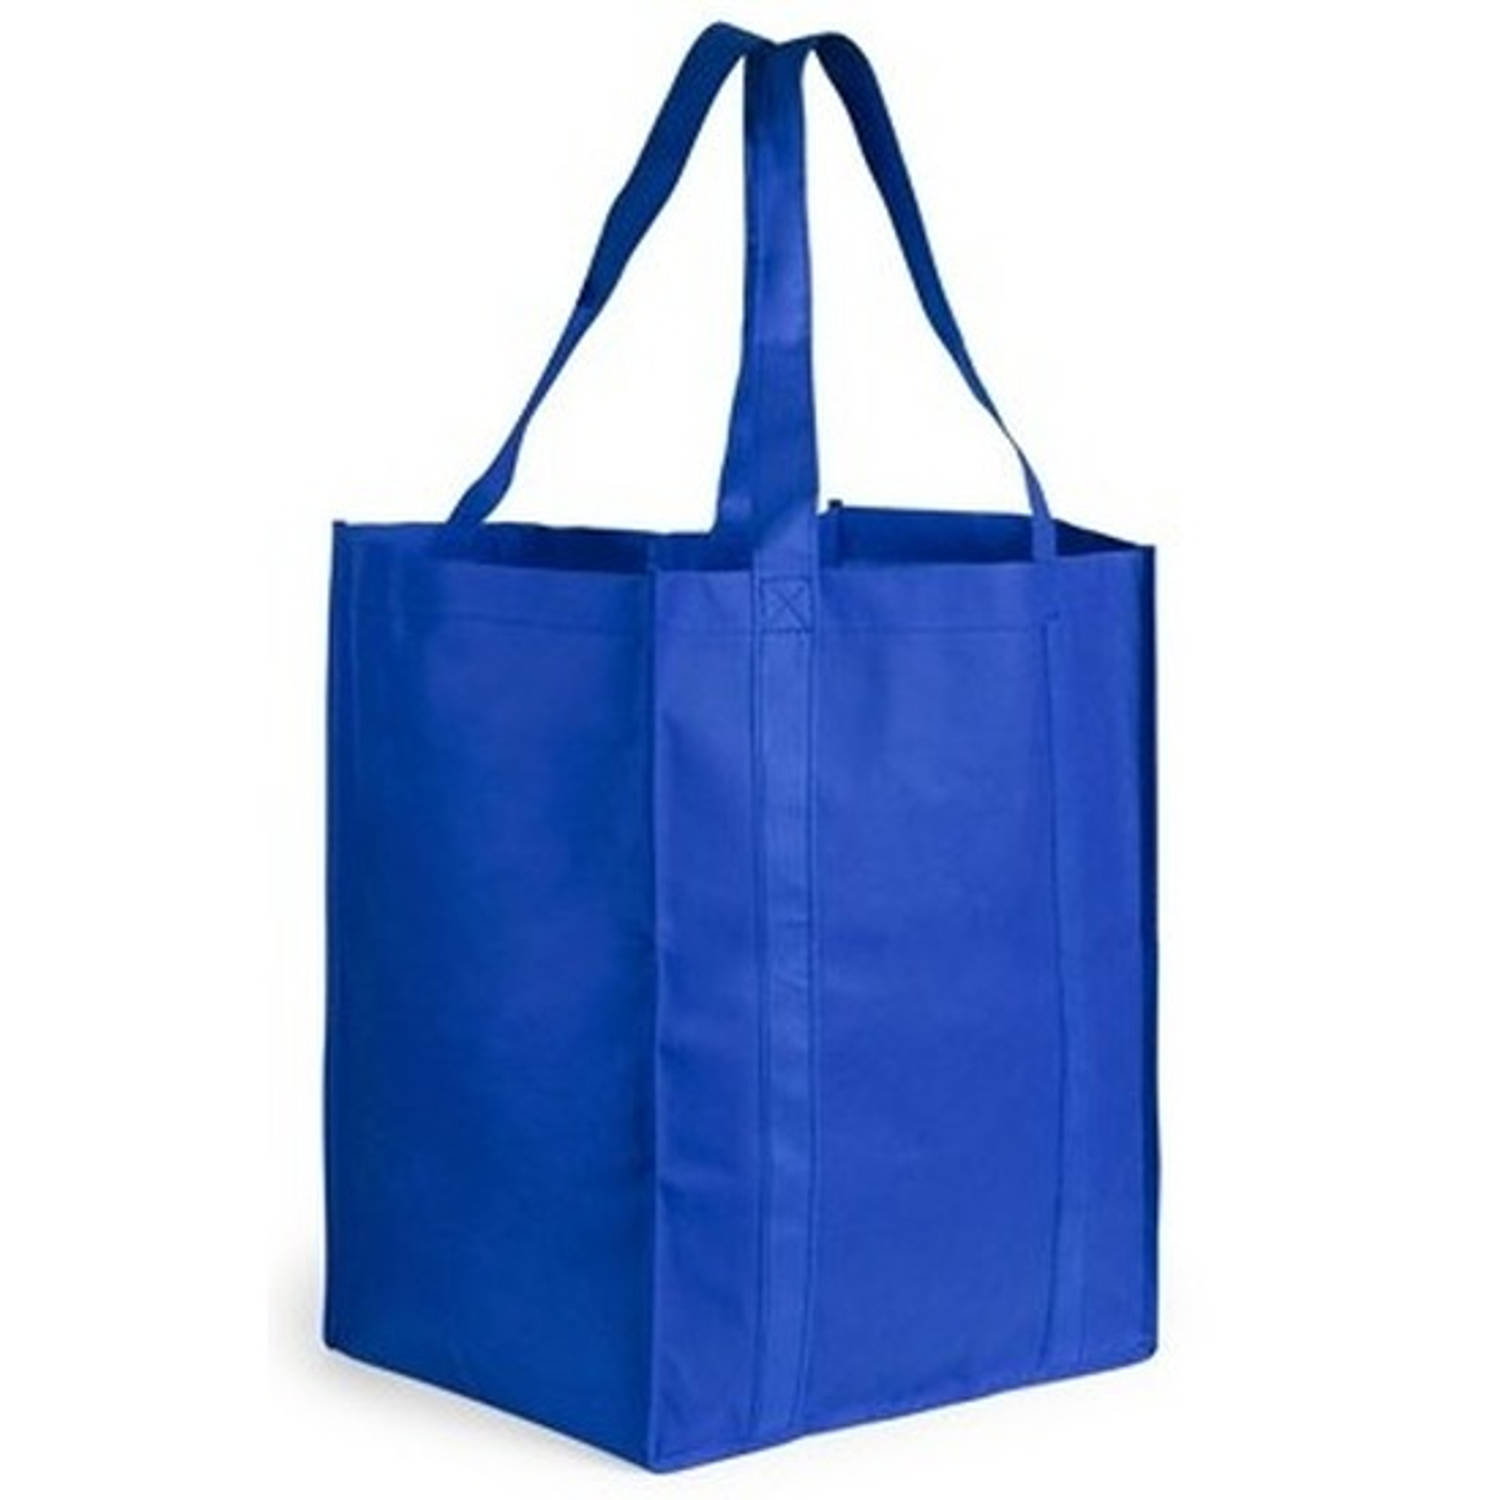 Landelijk beetje Varen Boodschappen tas/shopper blauw 38 cm - Boodschappentassen | Blokker